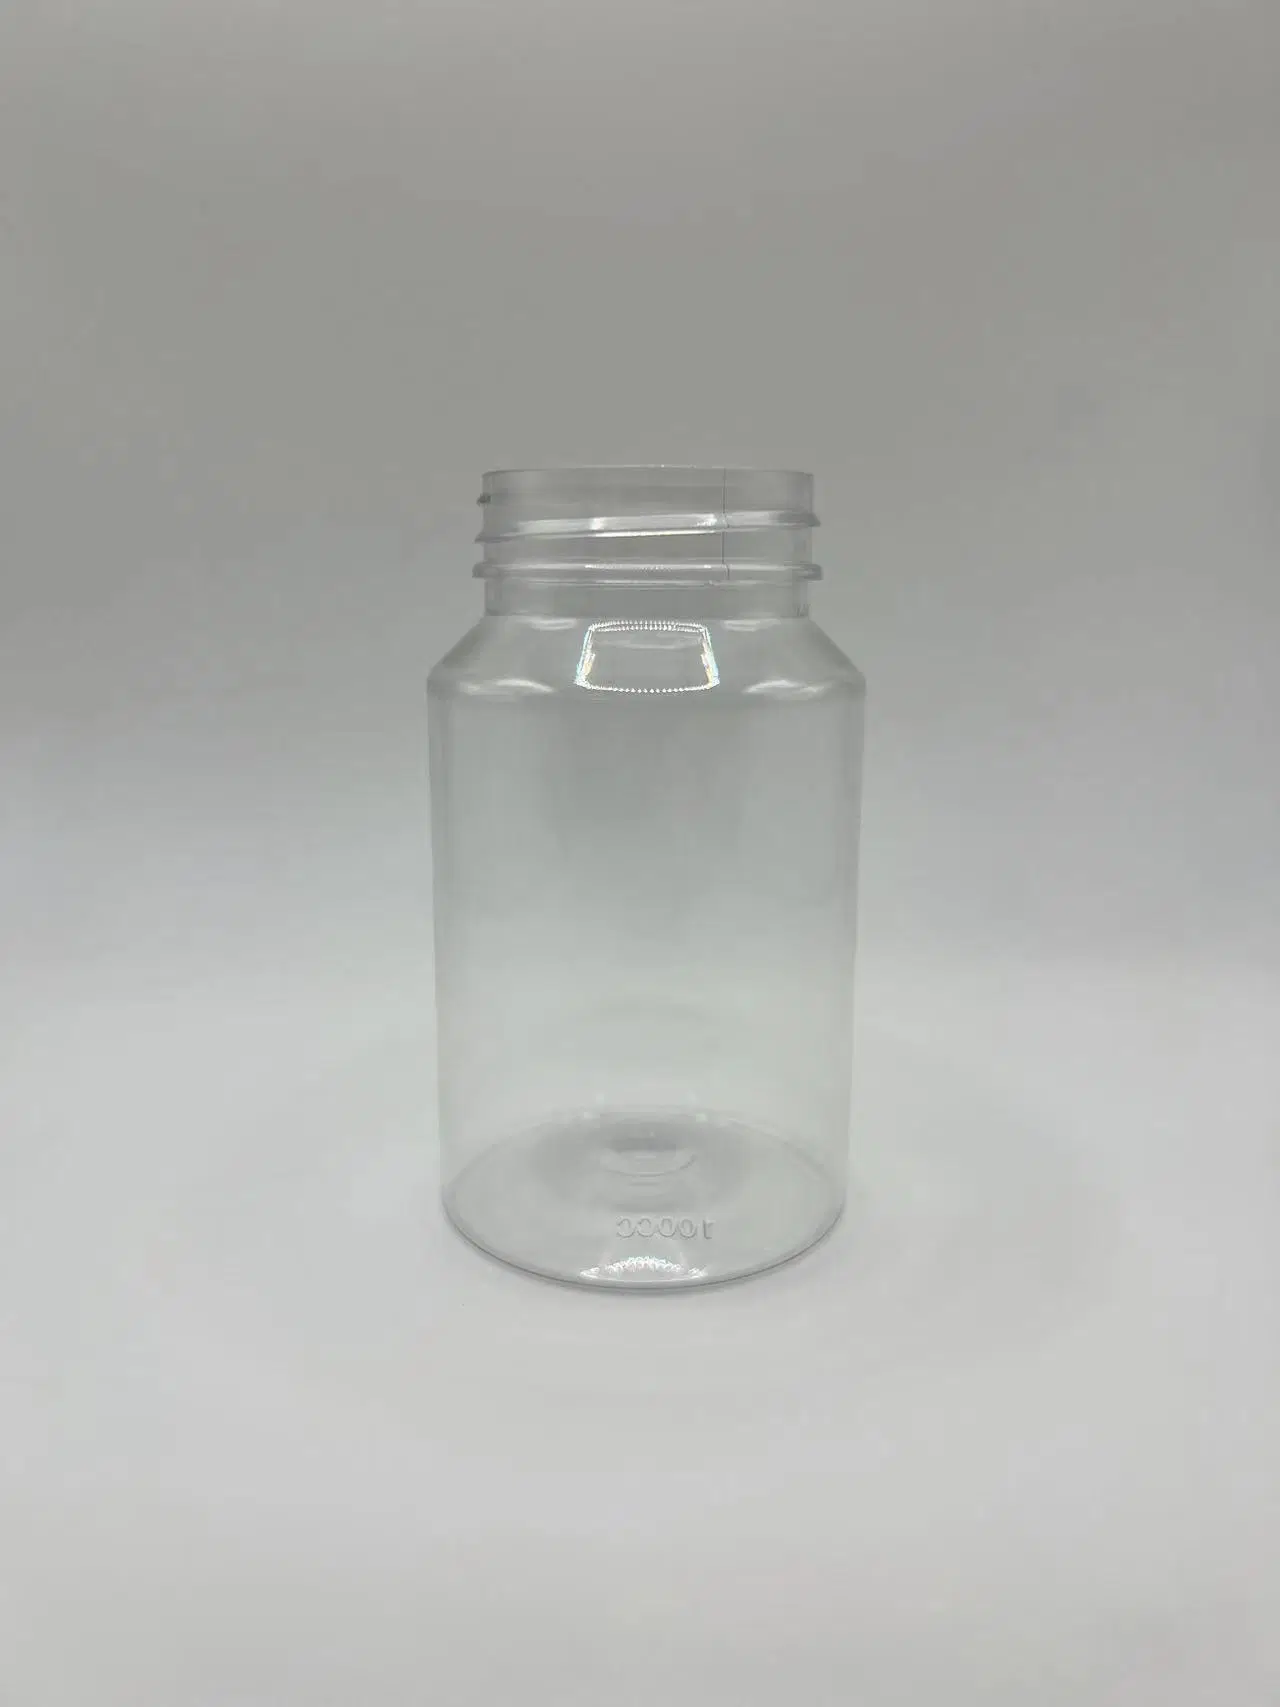 محبوبة [100مل] رعاية صحيّة منتوجات عقارات كتف مستديرة بلاستيك قابل للتخصيص الزجاجات